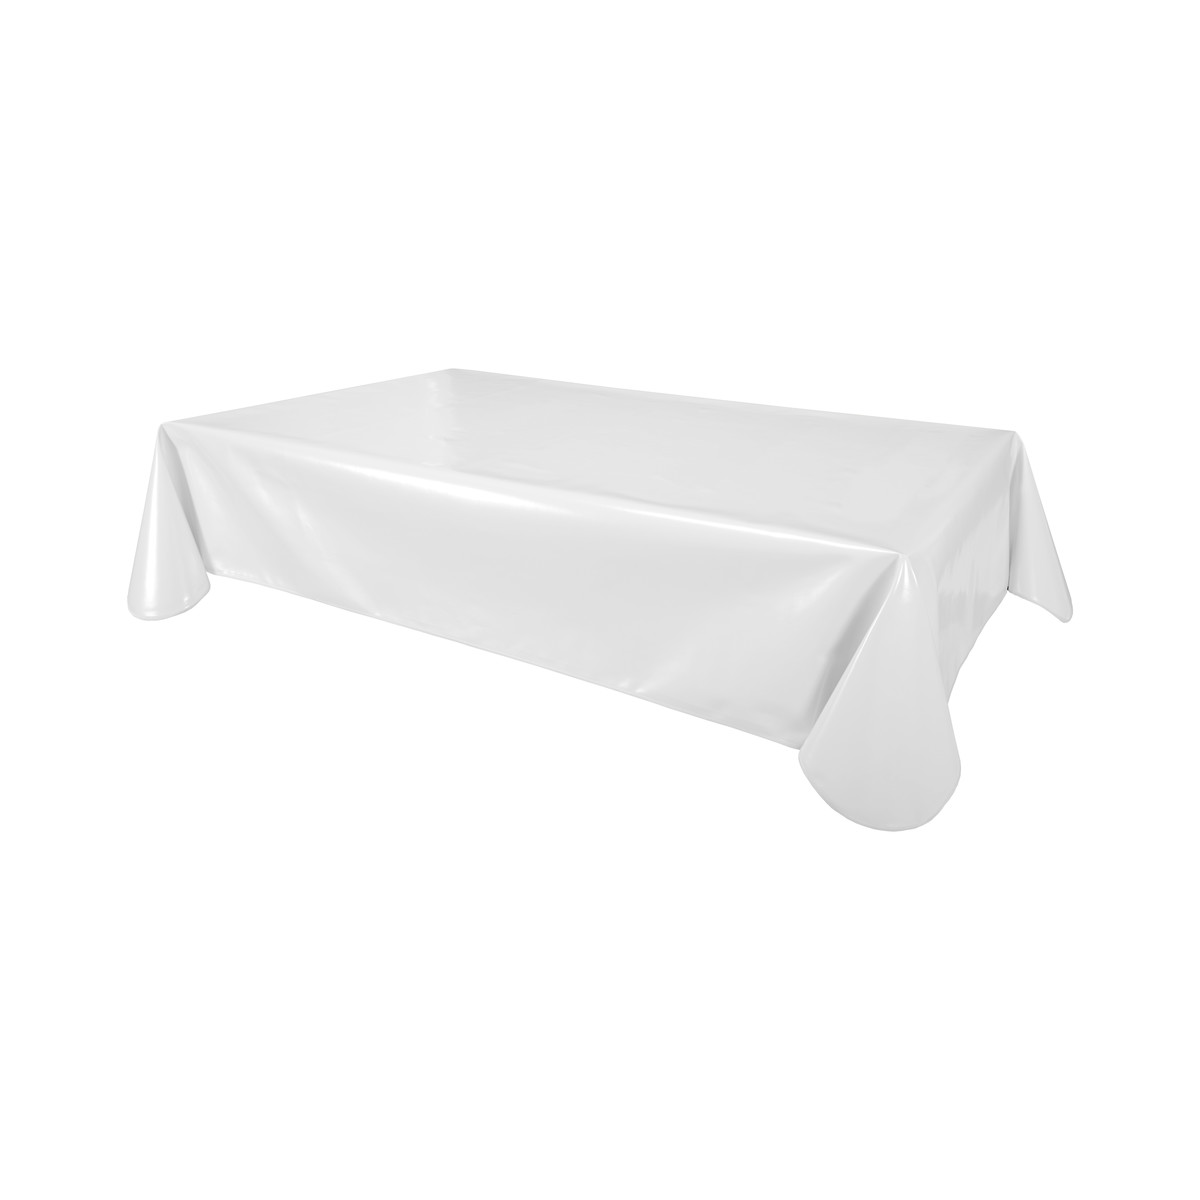 Home Napkin / table cloth / place mats Habitable UNI - BLANC - 140X250 CM White